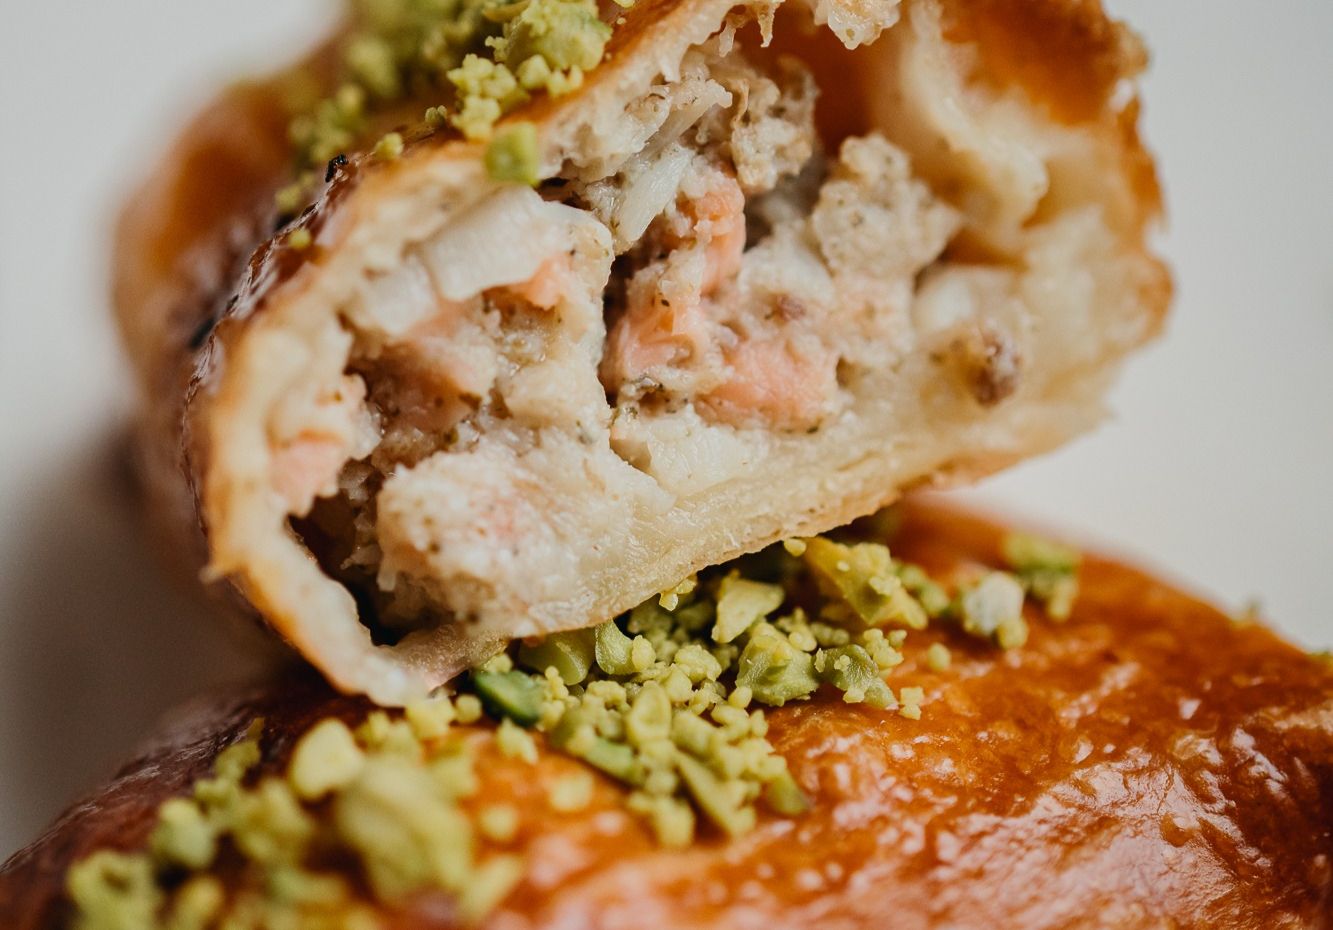 Новости ресторанов: берлинский карривурст, крудо из дорадо и бутерброд с красной икрой (фото 8)